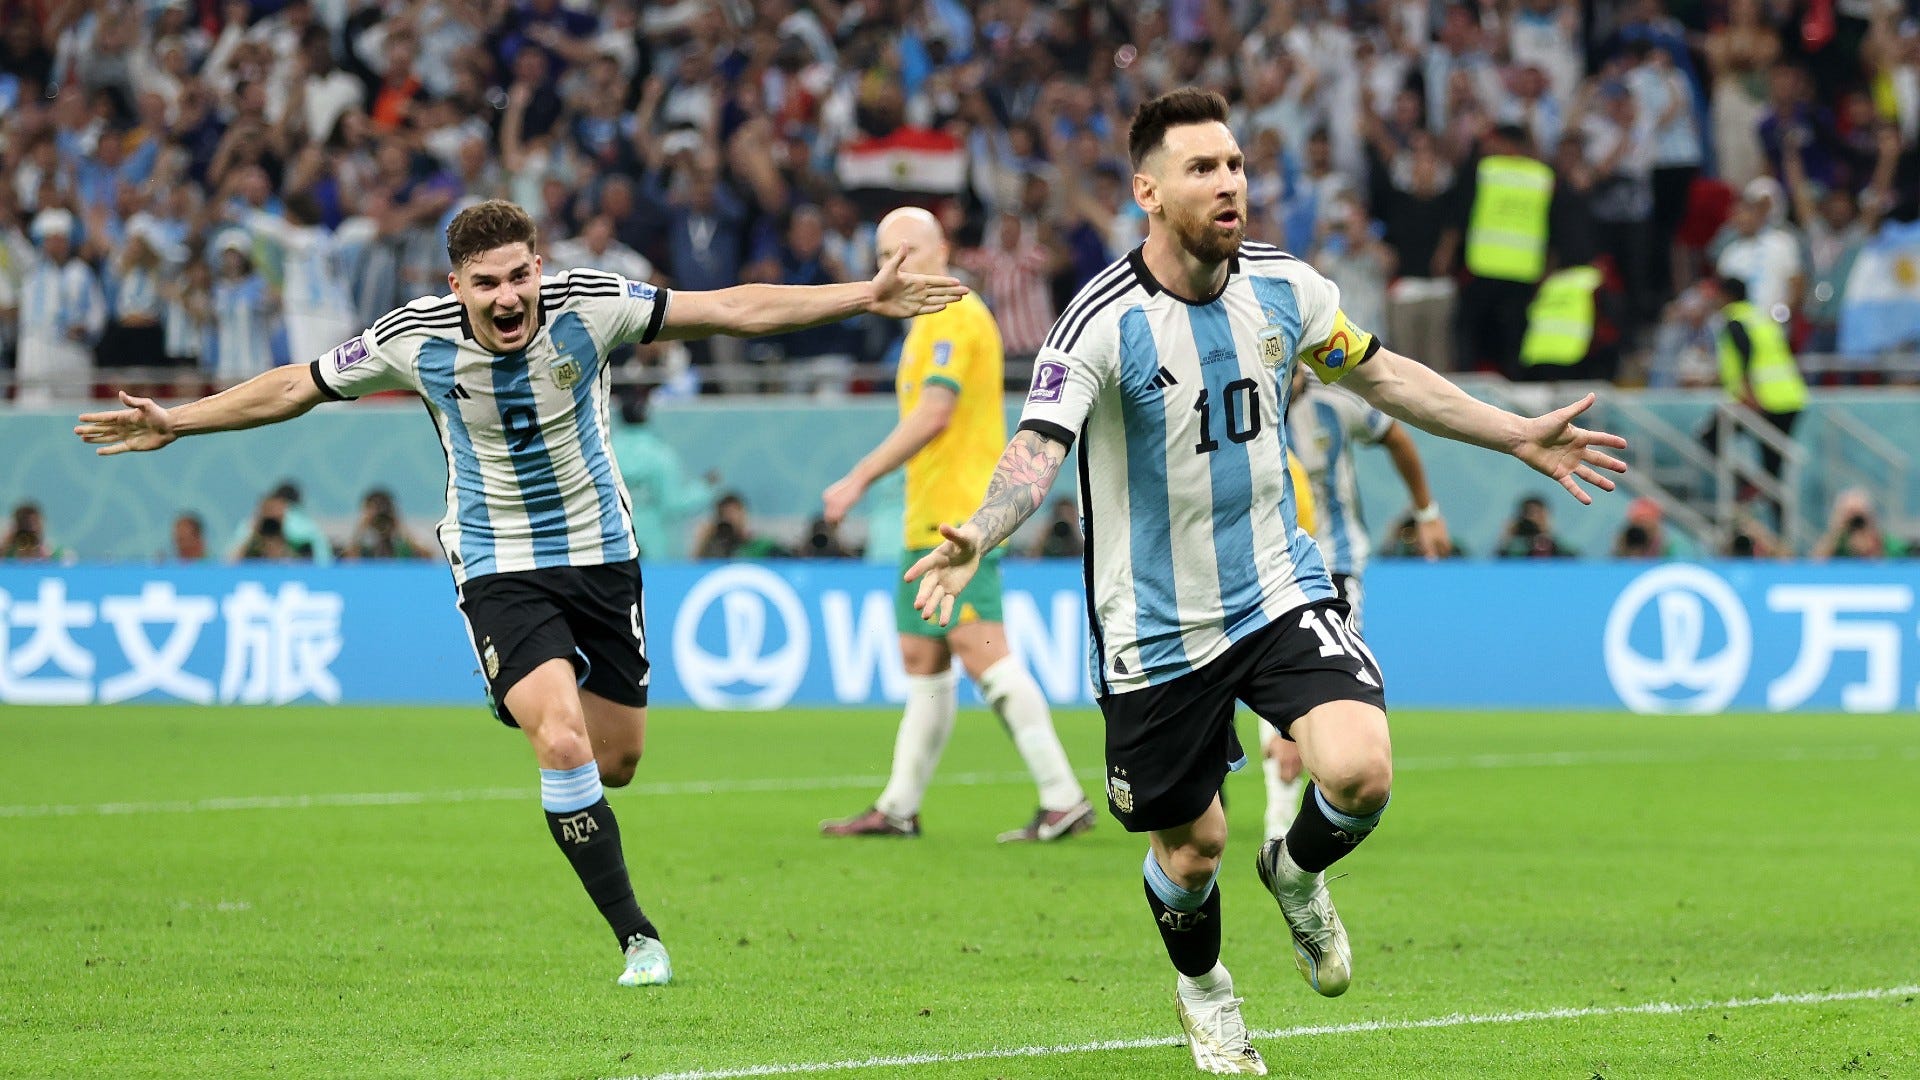 Messi - tên tuổi đã trở thành một biểu tượng trong làng bóng đá thế giới, không chỉ vì kỹ năng đỉnh cao, mà còn bởi tầm ảnh hưởng mà anh ta mang lại. Hãy cùng thưởng thức những hình ảnh nói về Messi, quan sát những pha bóng đẳng cấp và những màn trình diễn tuyệt vời của cầu thủ người Argentina này.